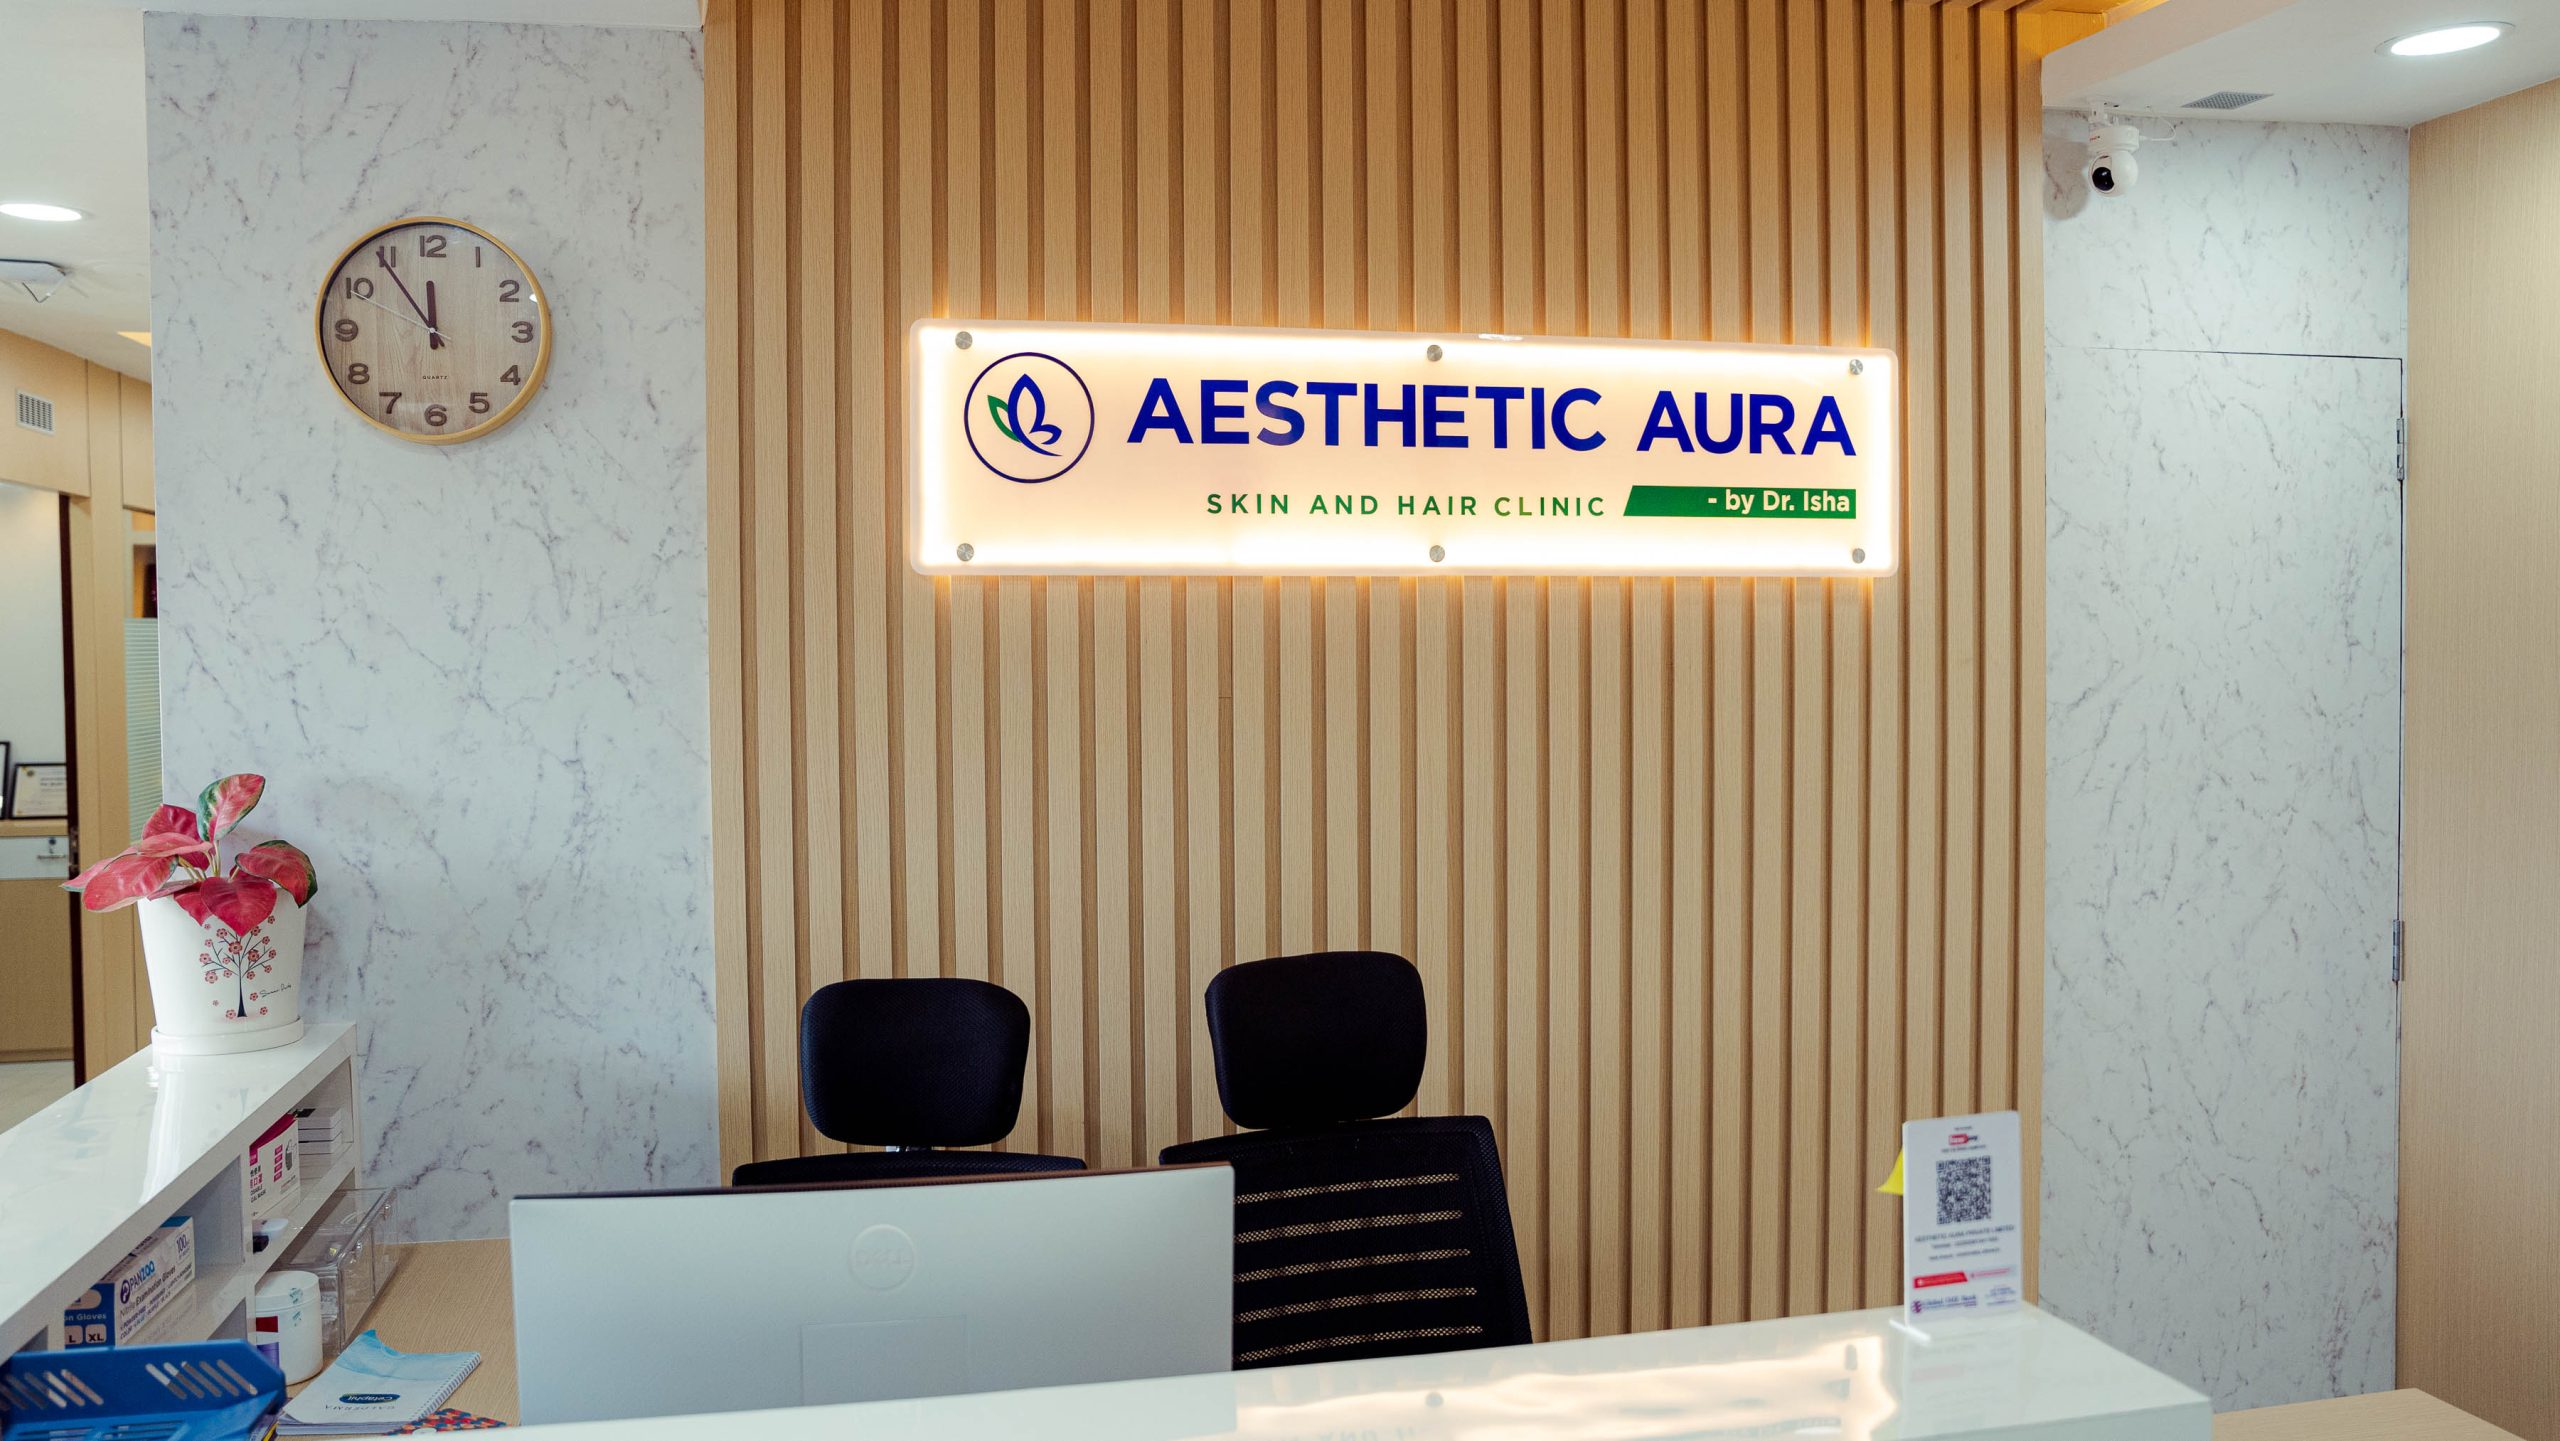 Aesthetic aura known as best skin doctor in kathmandu and top skin hospital in kathmandu